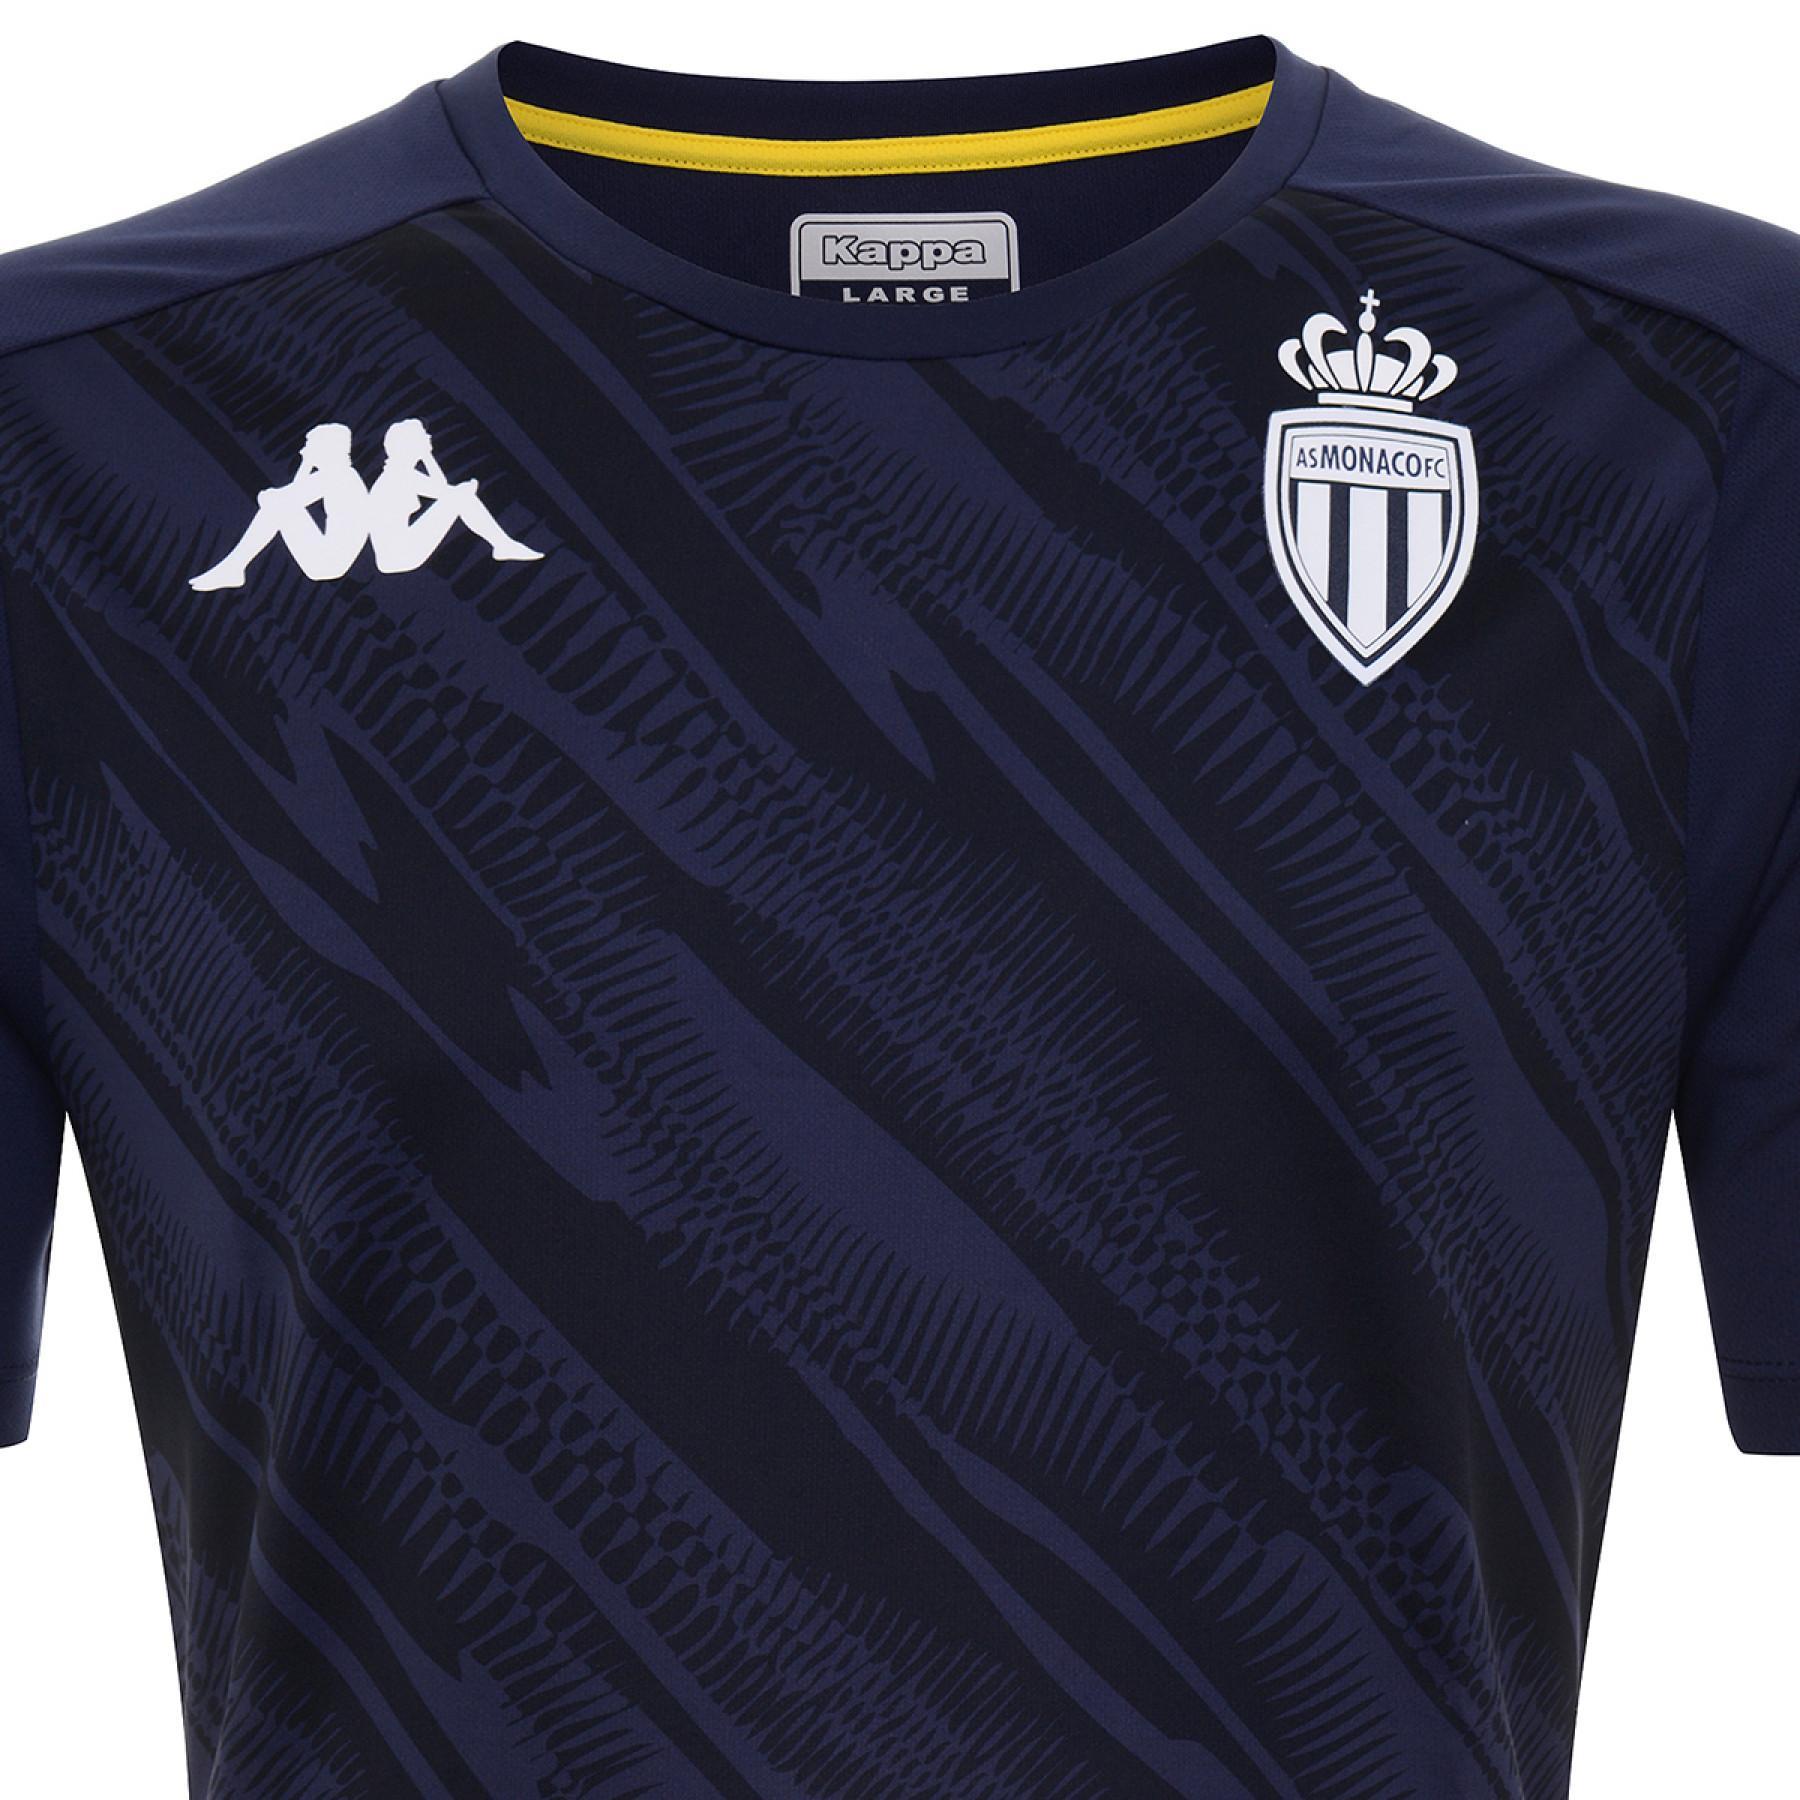 T-shirt AS Monaco 2020/21 aboupres pro 4